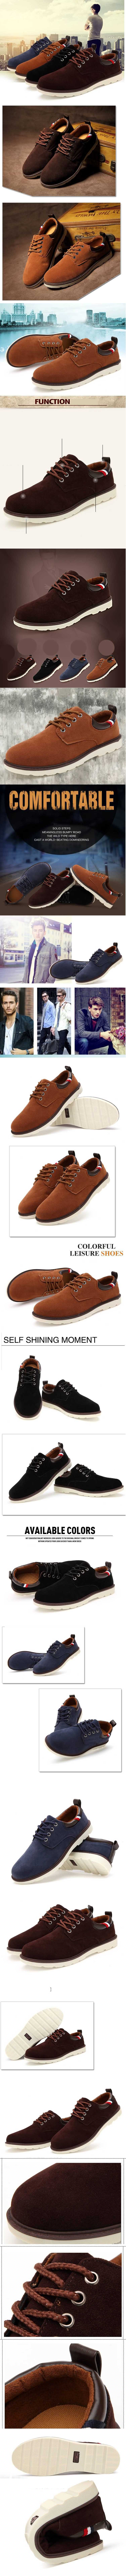 jual sepatu sneaker kulit pria terbaru, temukan koleksi sepatu sneakers pria dari bahan kulit terlengkap dan terbaru hanay di store.pakaianfashionpria.com